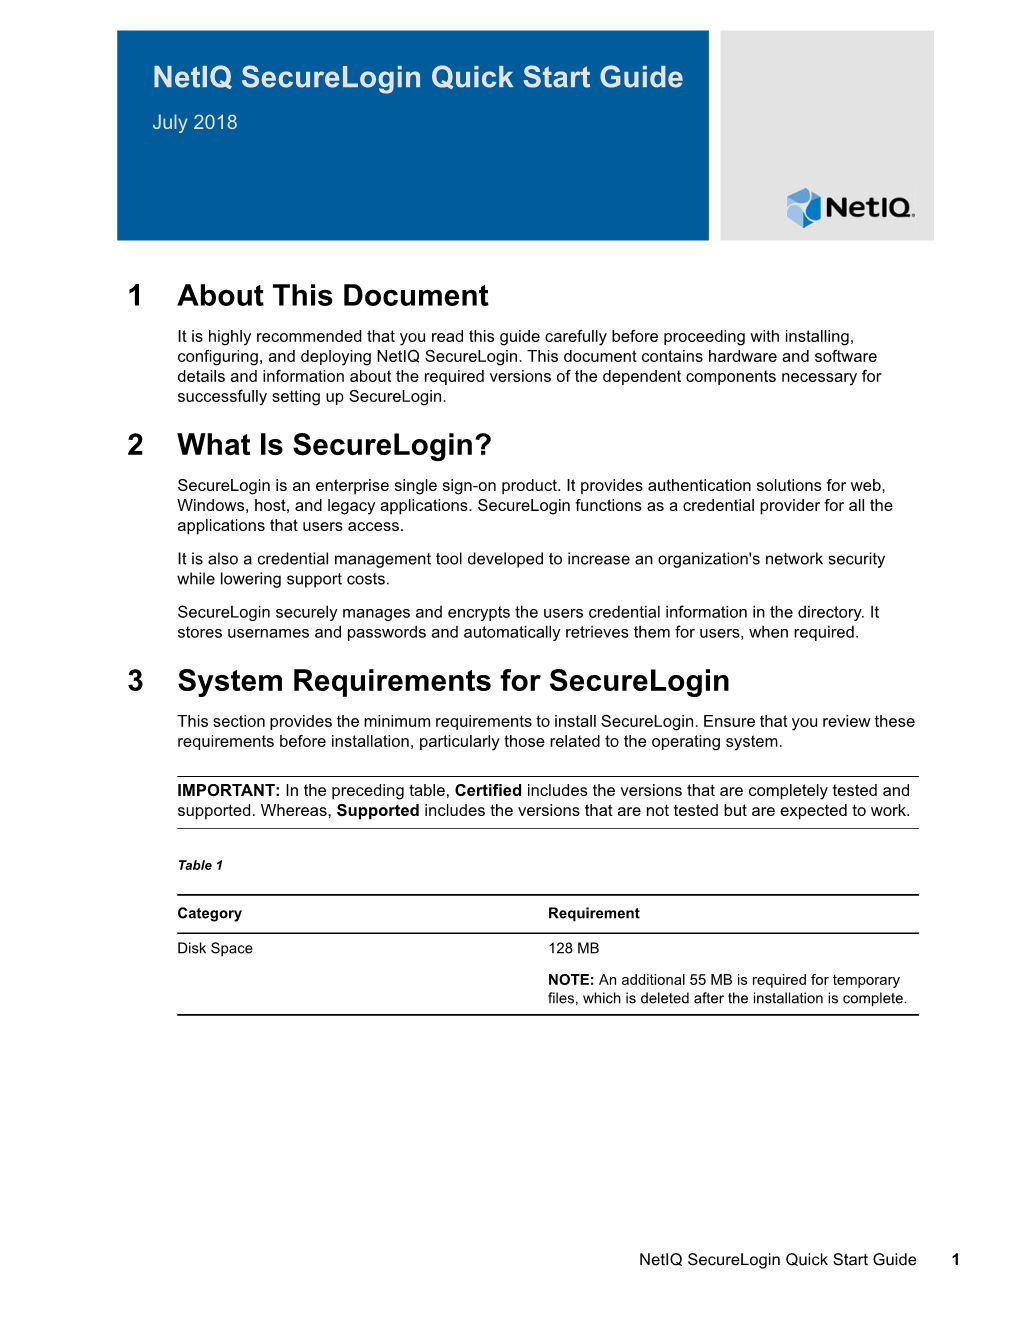 Netiq Securelogin Quick Start Guide July 2018